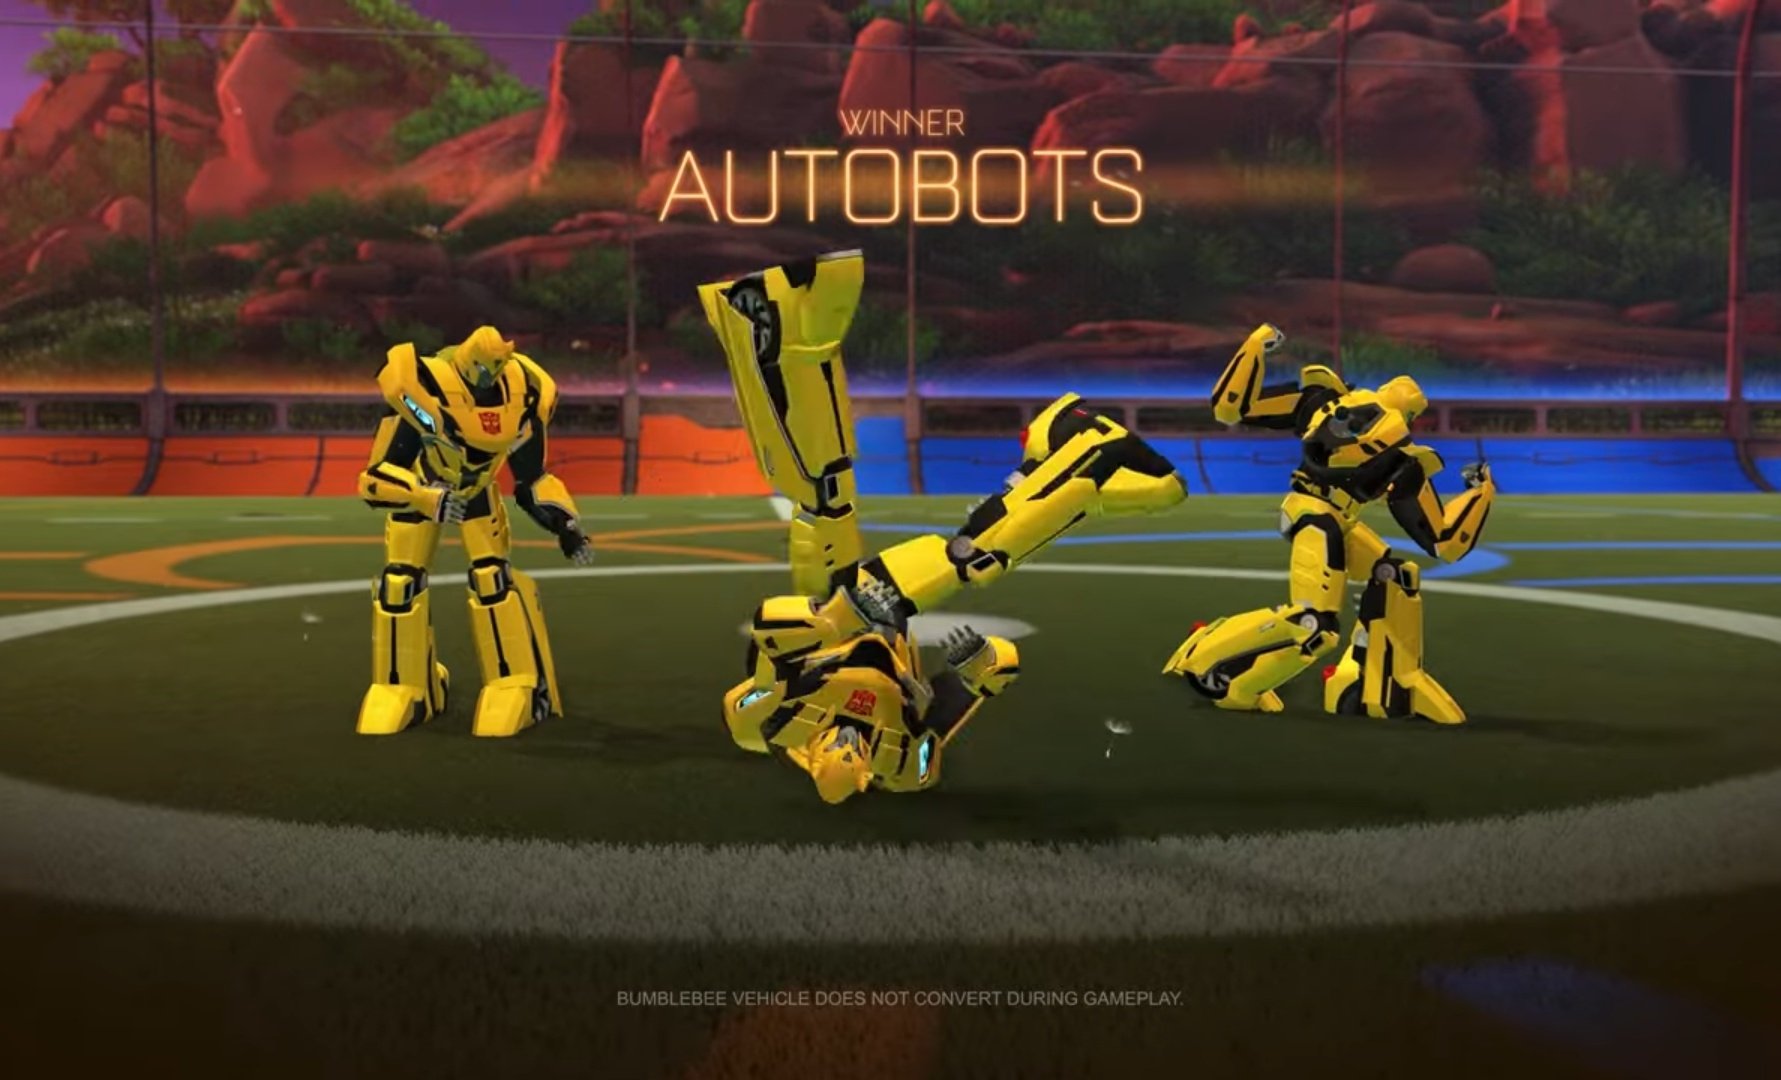 Rocket League X Transformers, la nueva colaboración de los autos futboleros. 17